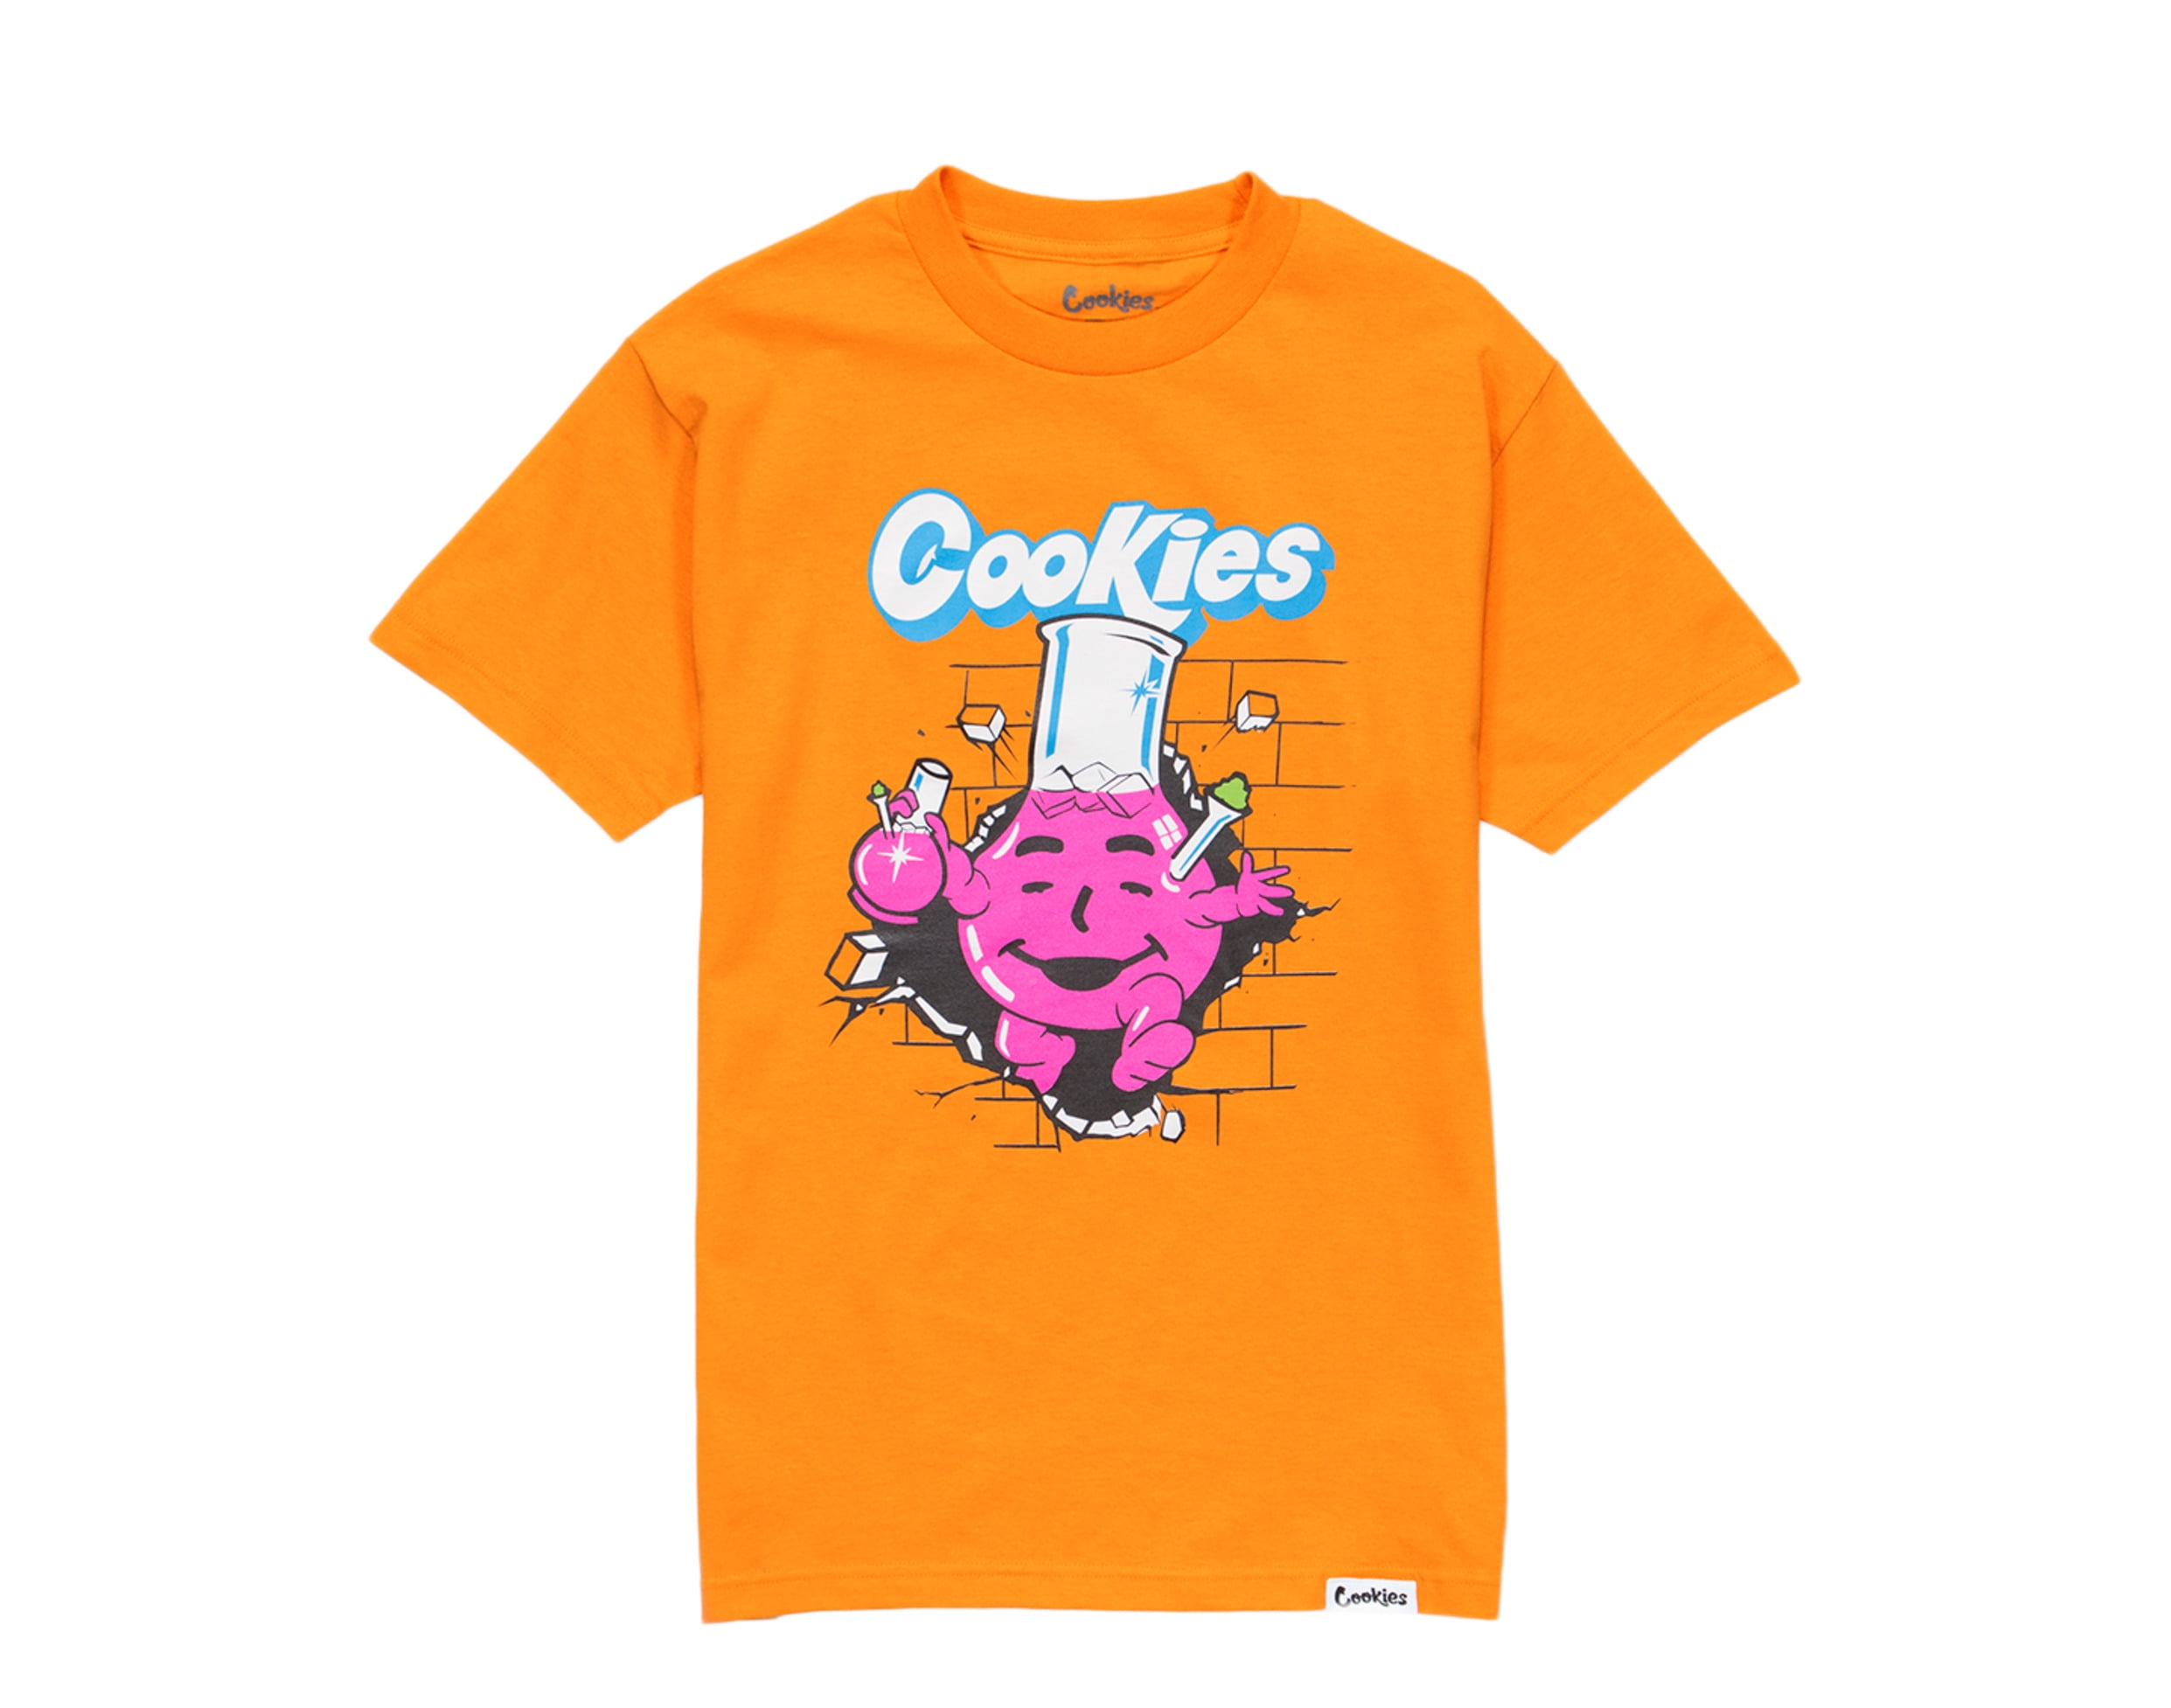 Cookies - Cookies How Sweet It Is Kool-Aid Orange Men's Tee Shirt ...
 Kool Aid Shirt